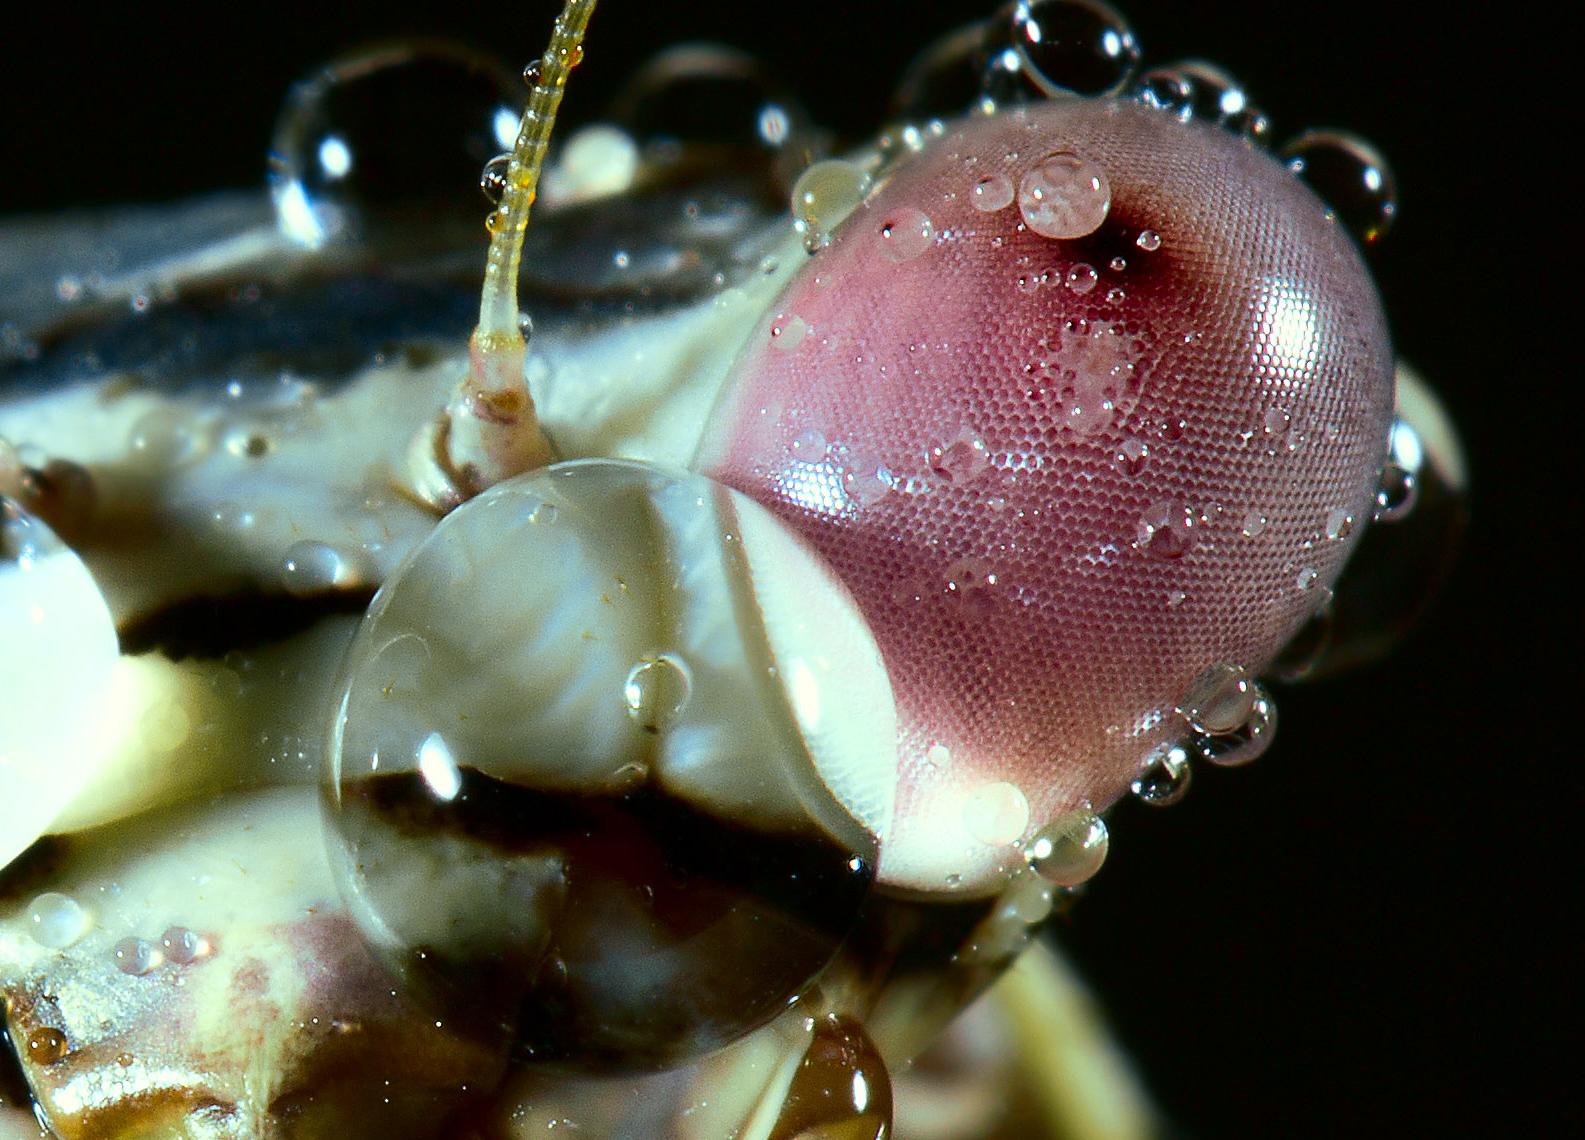 螳螂的复眼上的黑点是眼球吗?为什么会动? 